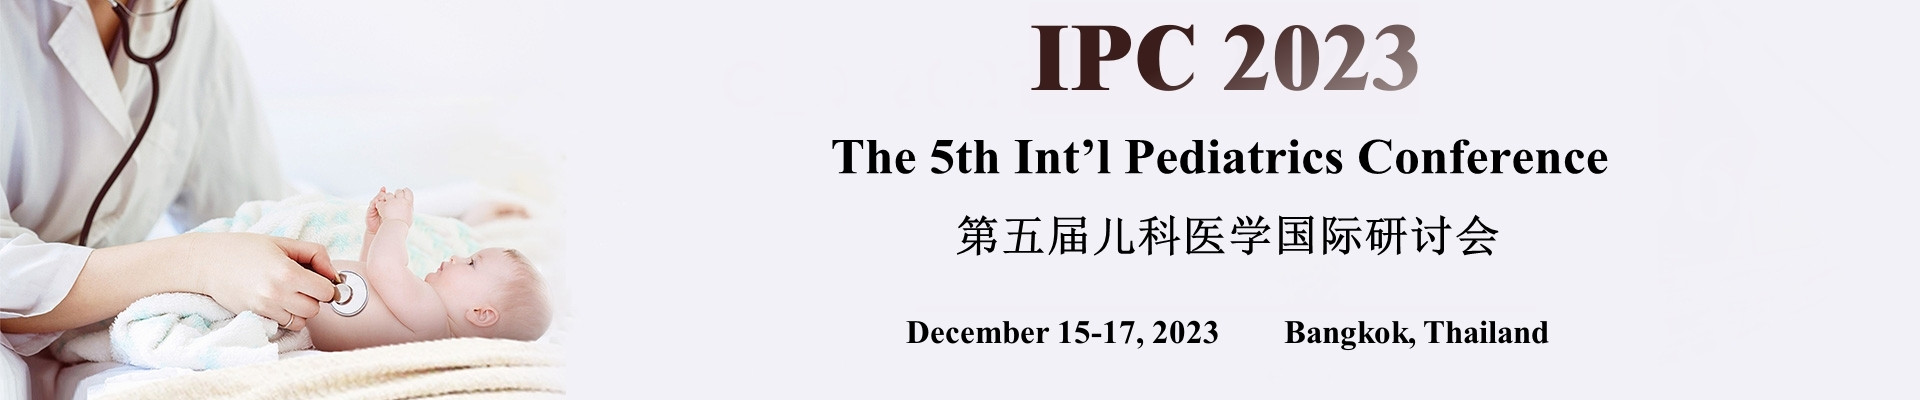 第五屆兒科醫學國際研討會(IPC 2023)